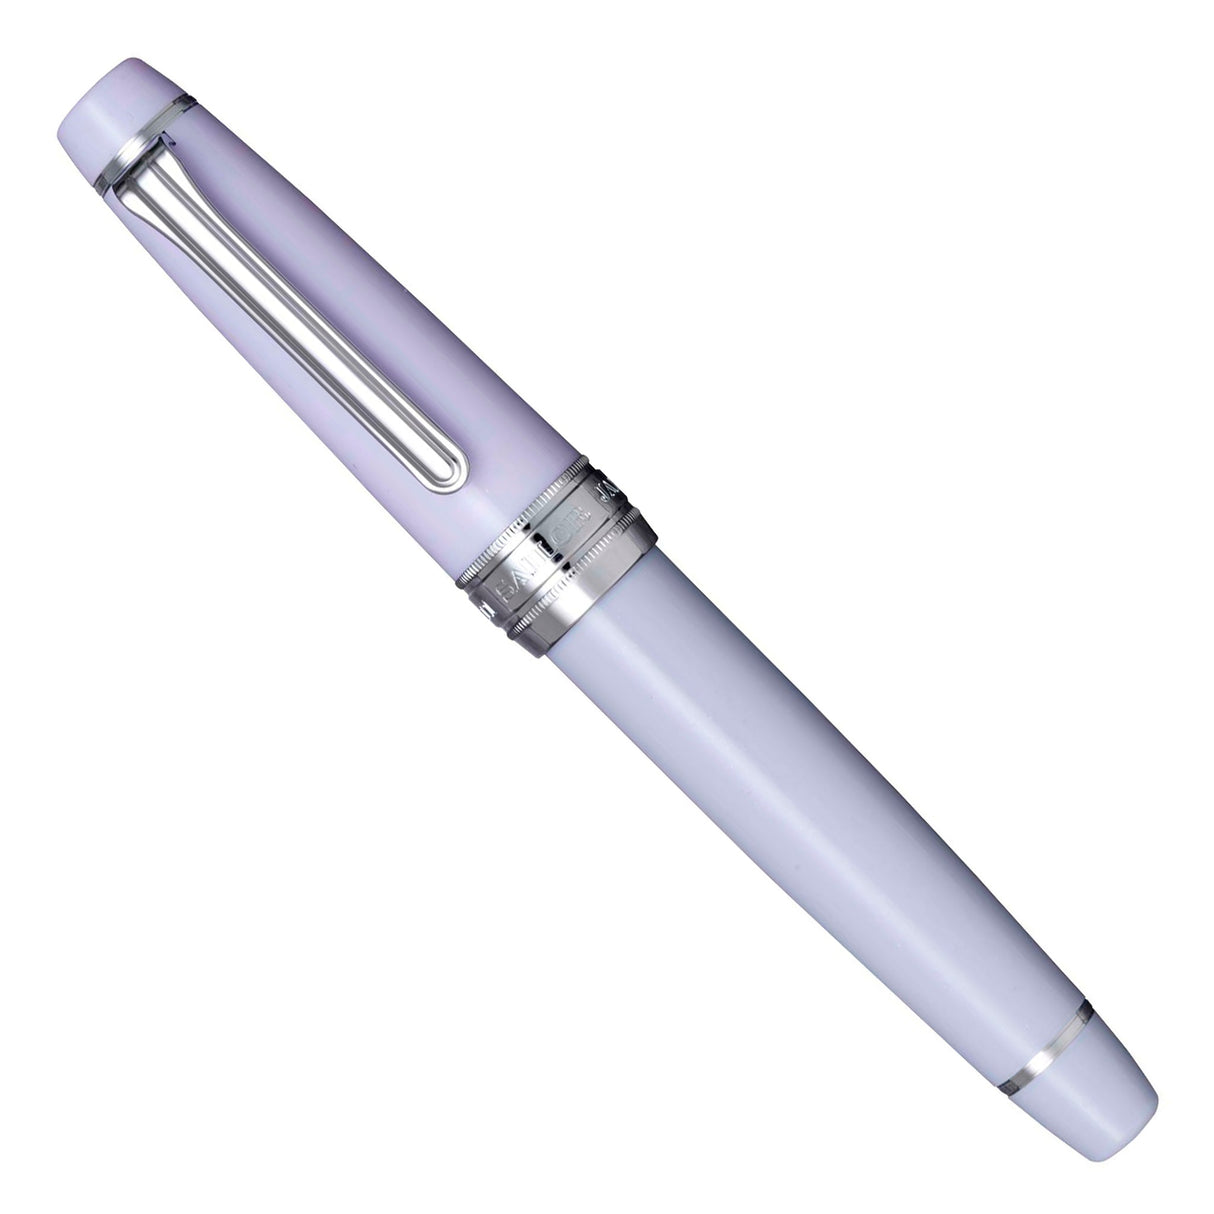 Sailor Professional Gear Winter Sky White Frost - King of Pens Pro Gear Fountain Pen (21K Nib)